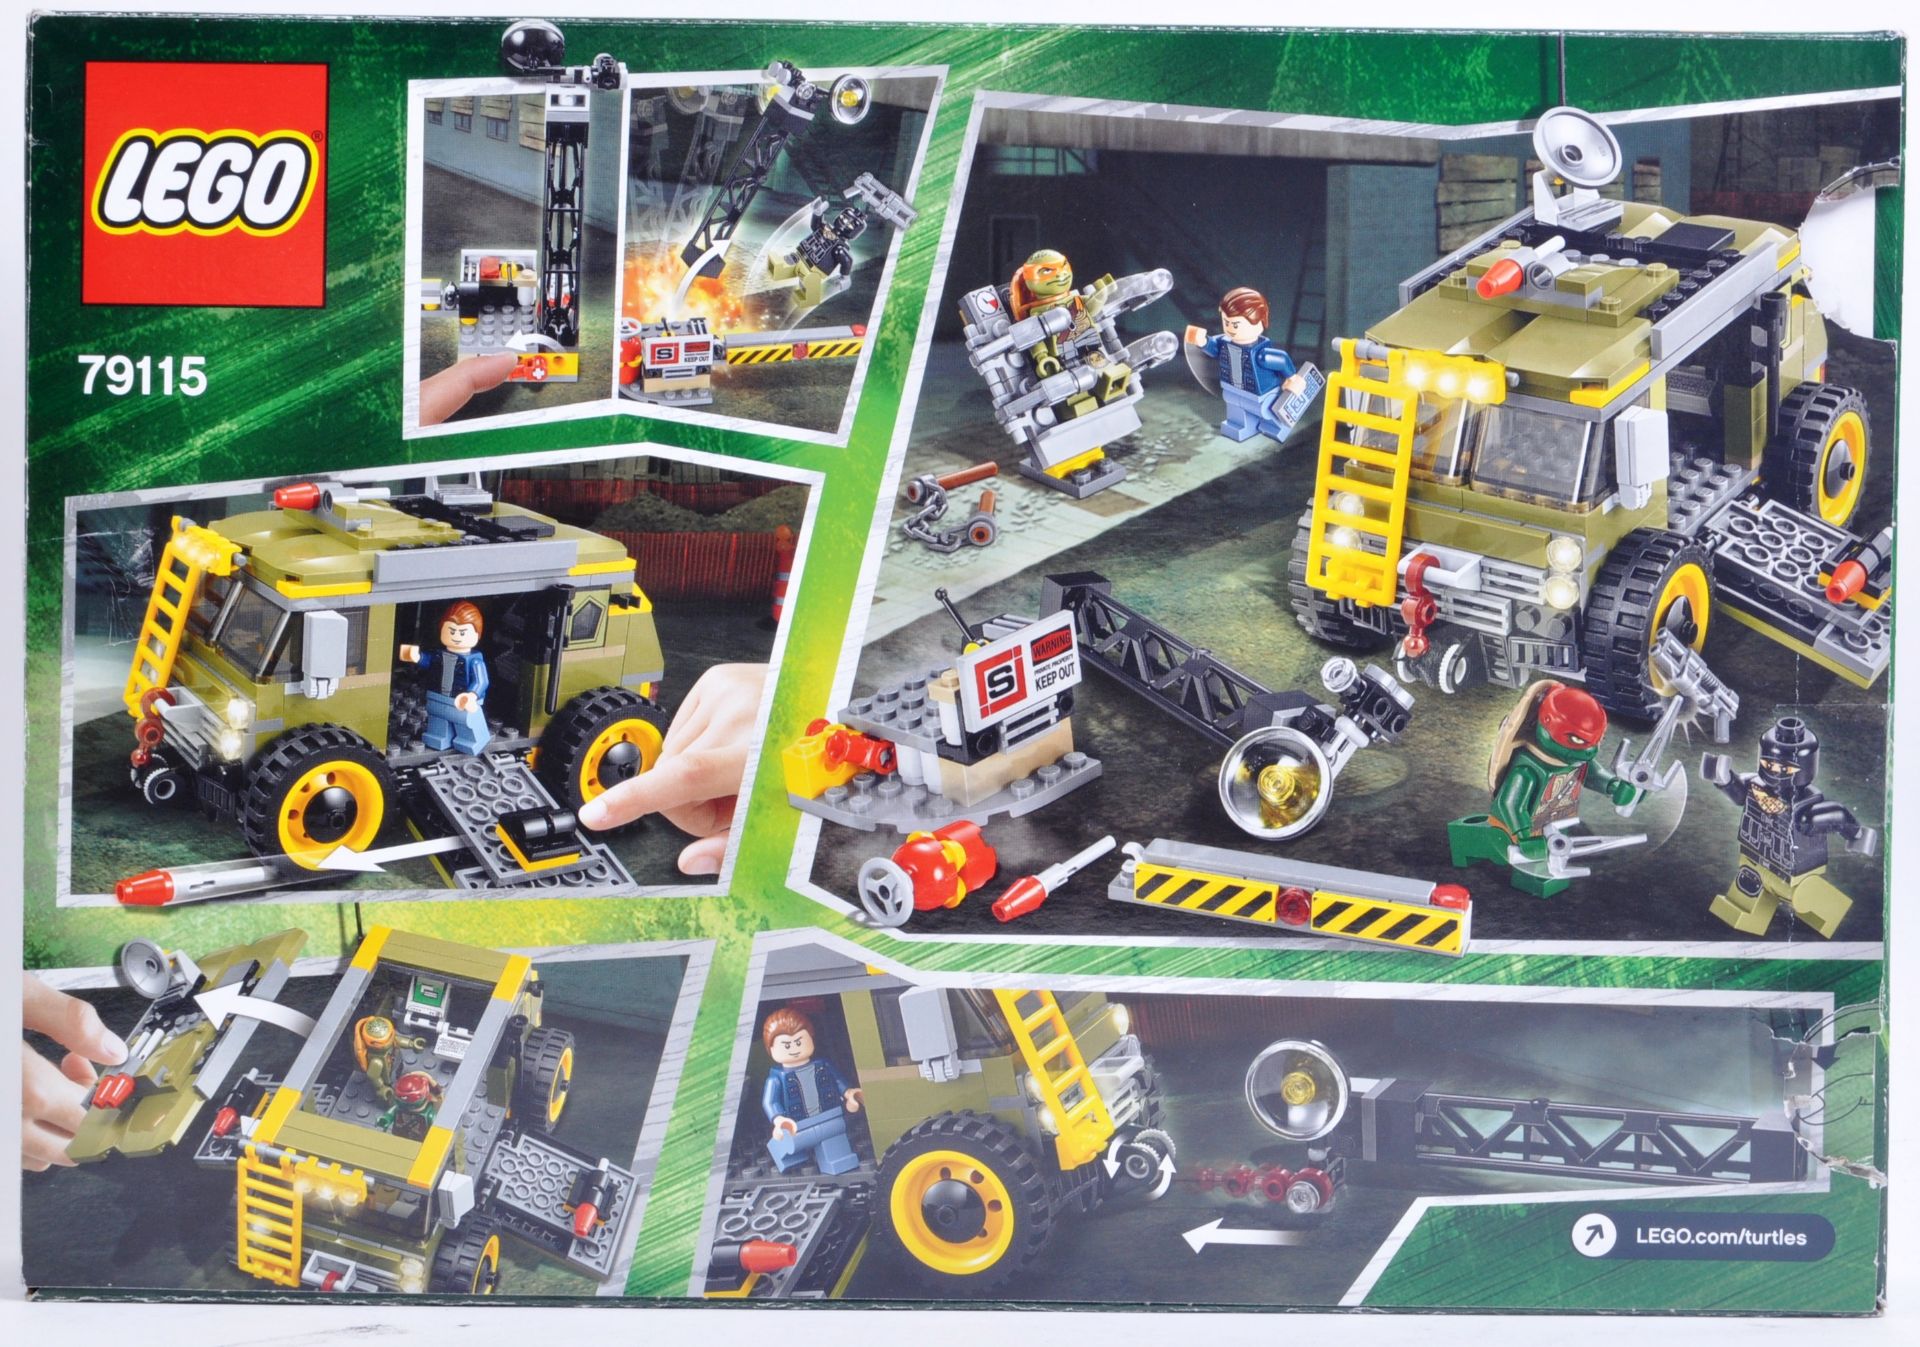 LEGO SET - LEGO NINJA TURTLES - 79115 - TURTLE VAN TAKEDOWN - Image 2 of 3